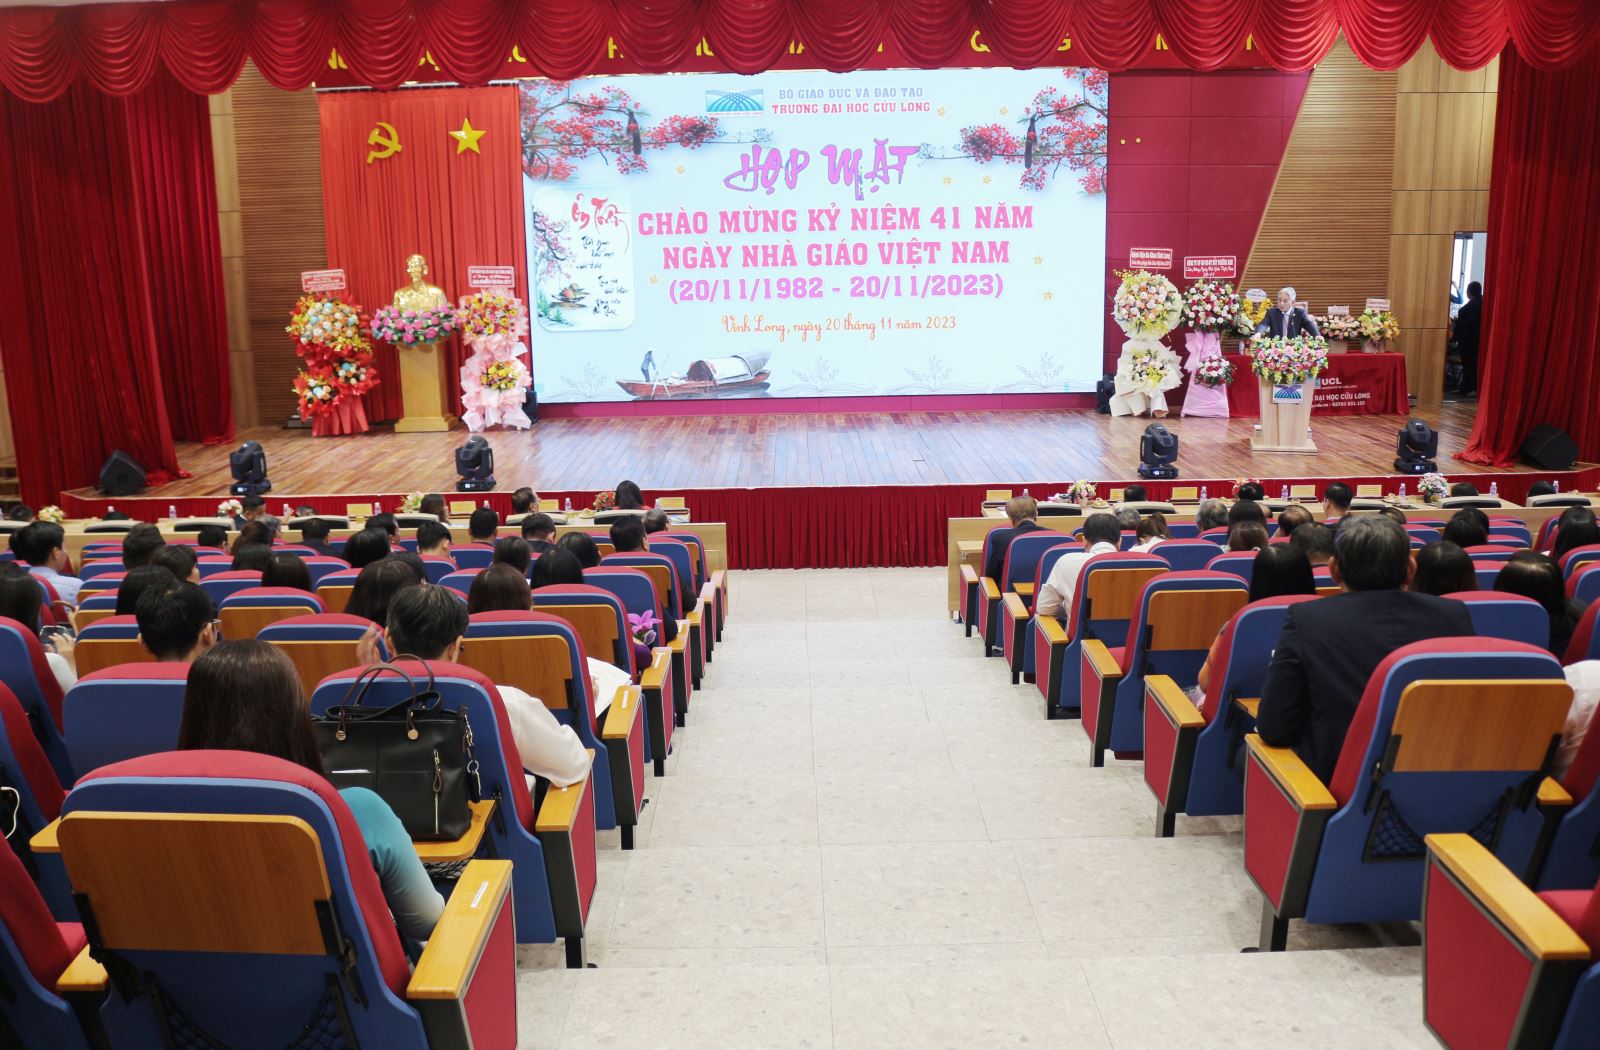 Quang cảnh buổi họp mặt kỷ niệm 41 năm Ngày Nhà giáo Việt Nam 20/11.